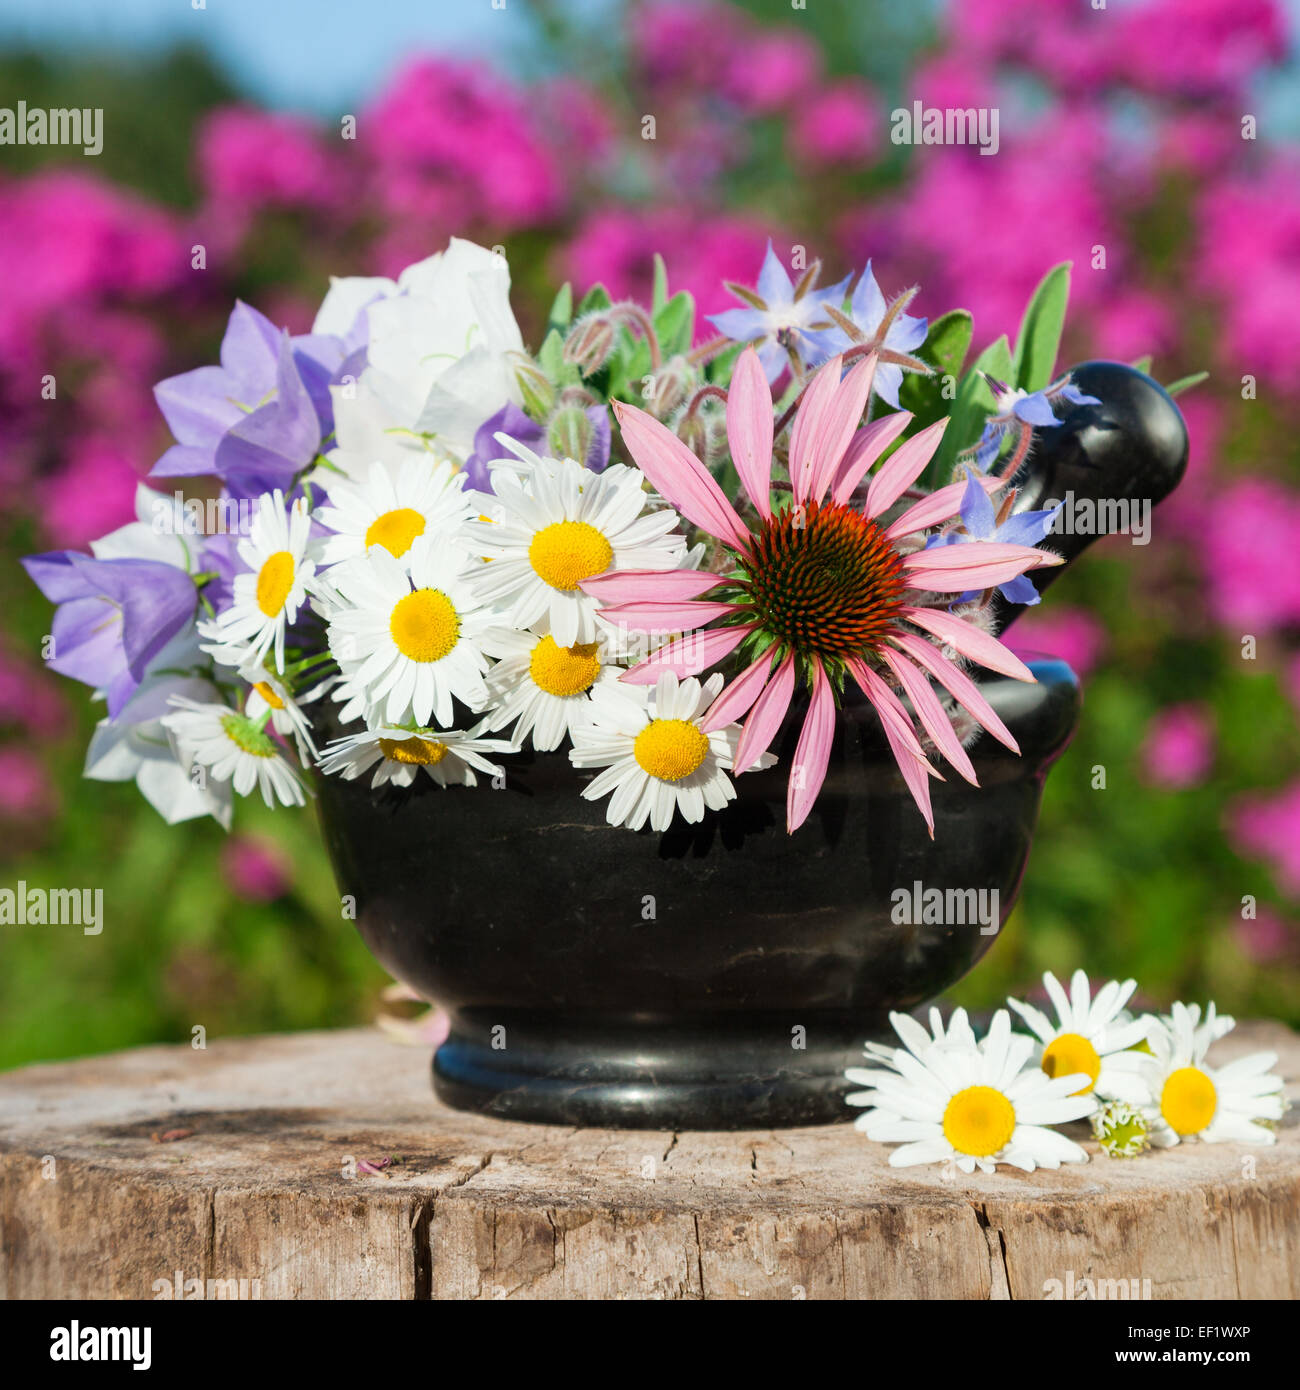 black mortar with healing herbs in garden, herbal medicine Stock Photo